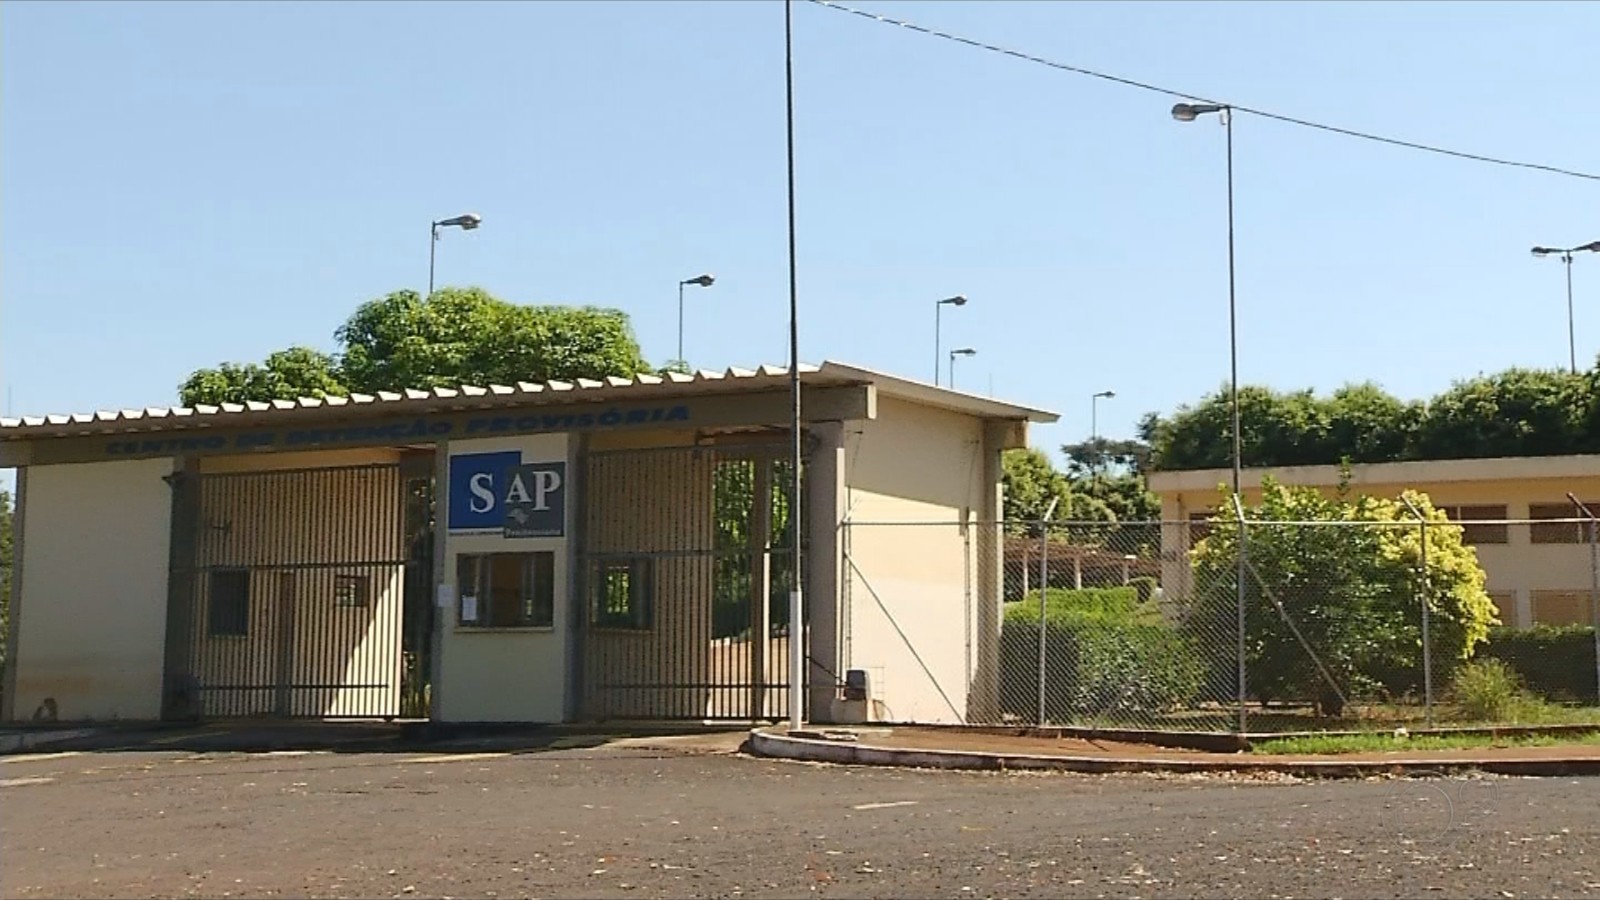 1.121 presos têm acesso a saidinha temporária na região de Rio Preto